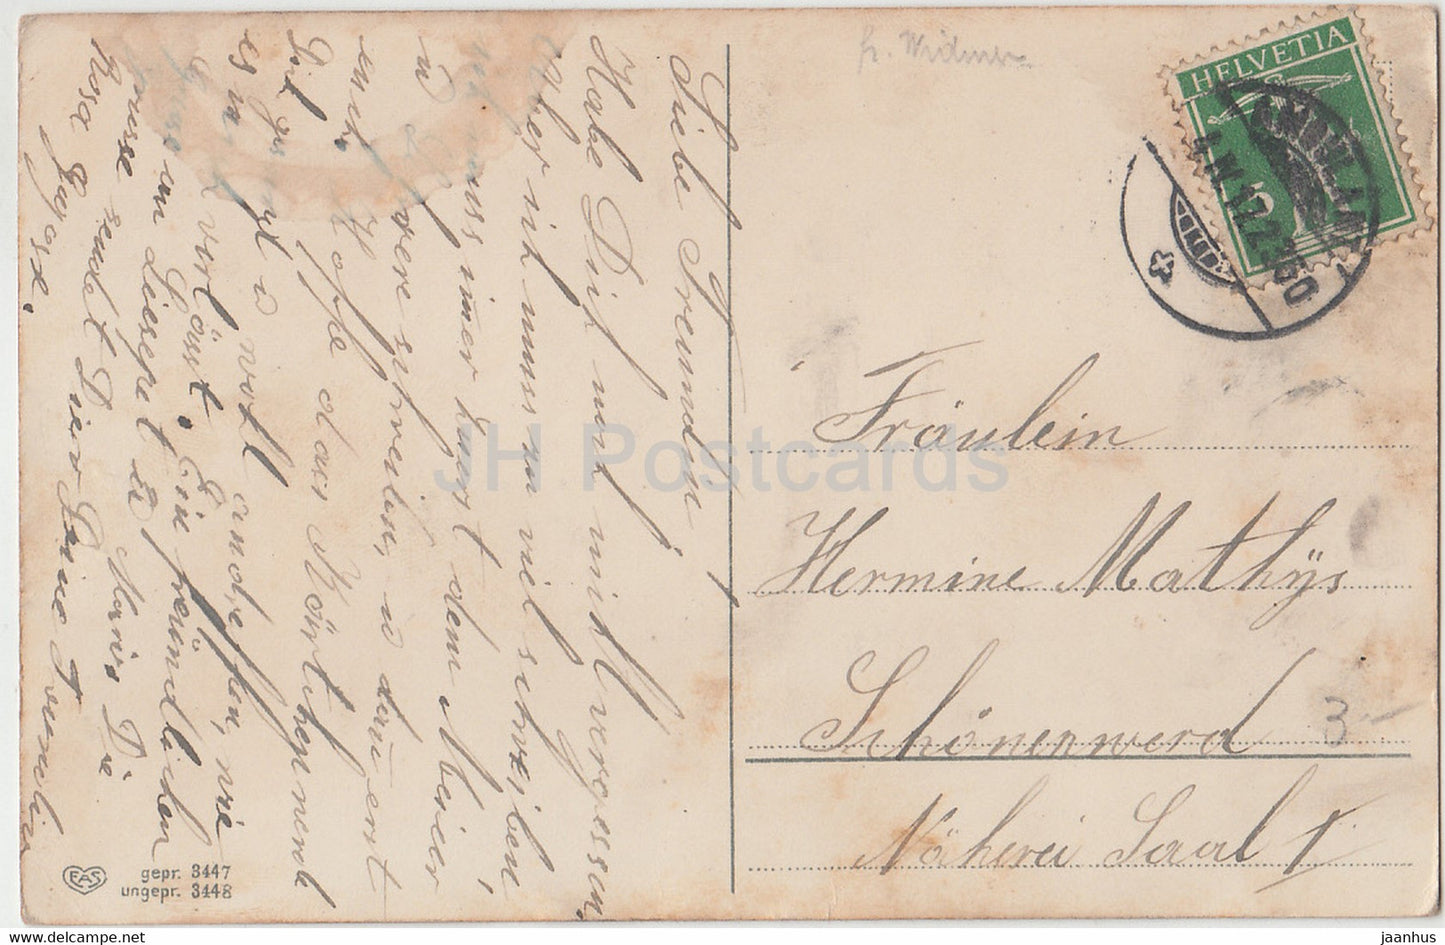 Carte de vœux de Pâques - Herzinnigen Ostergruss - poulet - EAS 3448 - carte postale ancienne - 1917 - Allemagne - utilisé